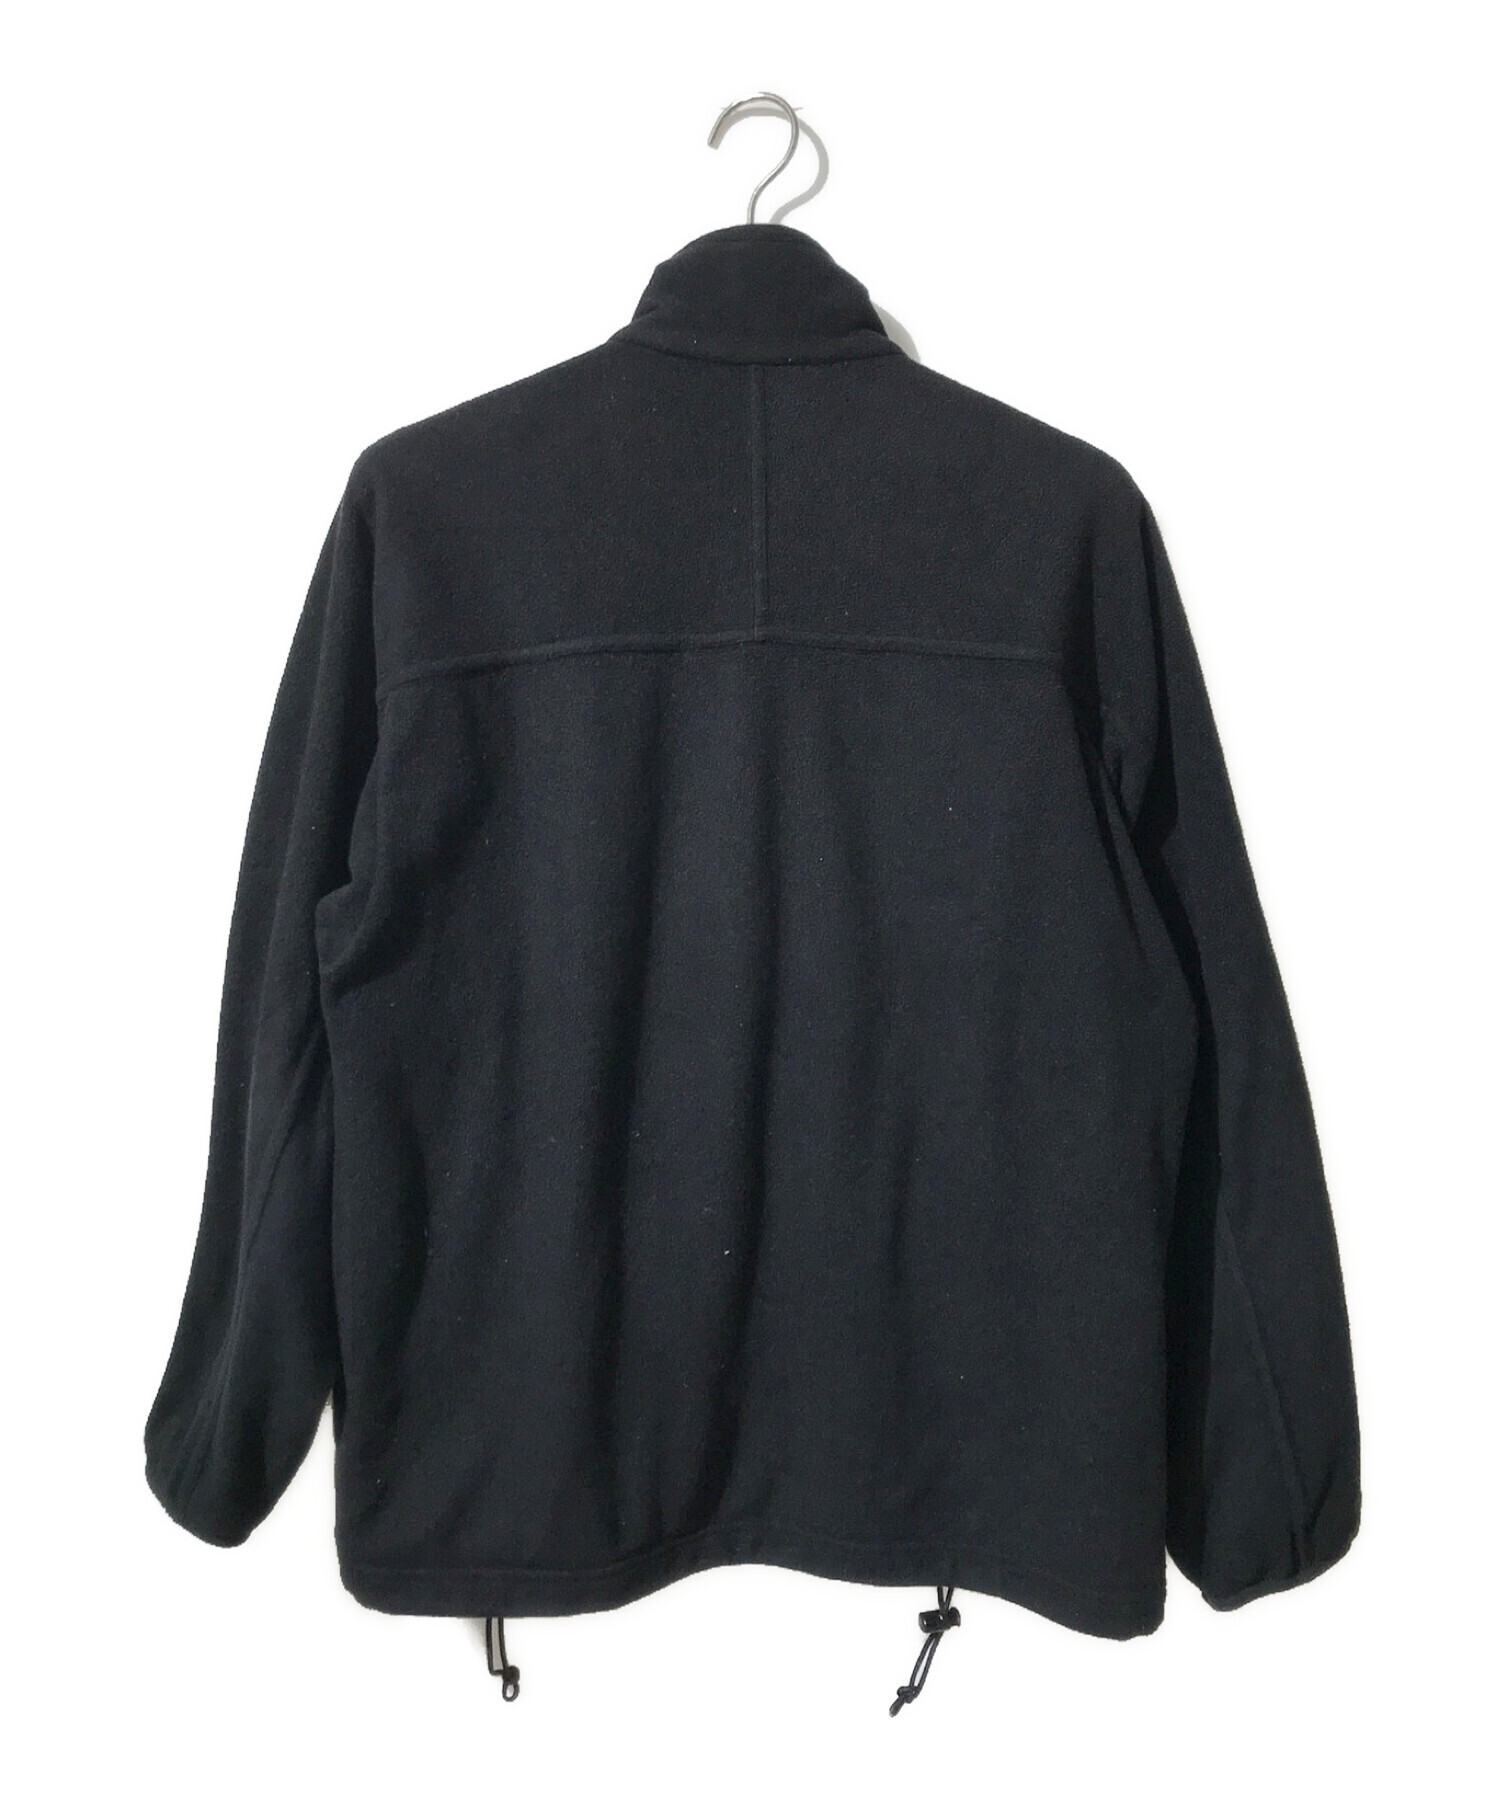 Patagonia (パタゴニア) フリースジャケット ブラック サイズ:M